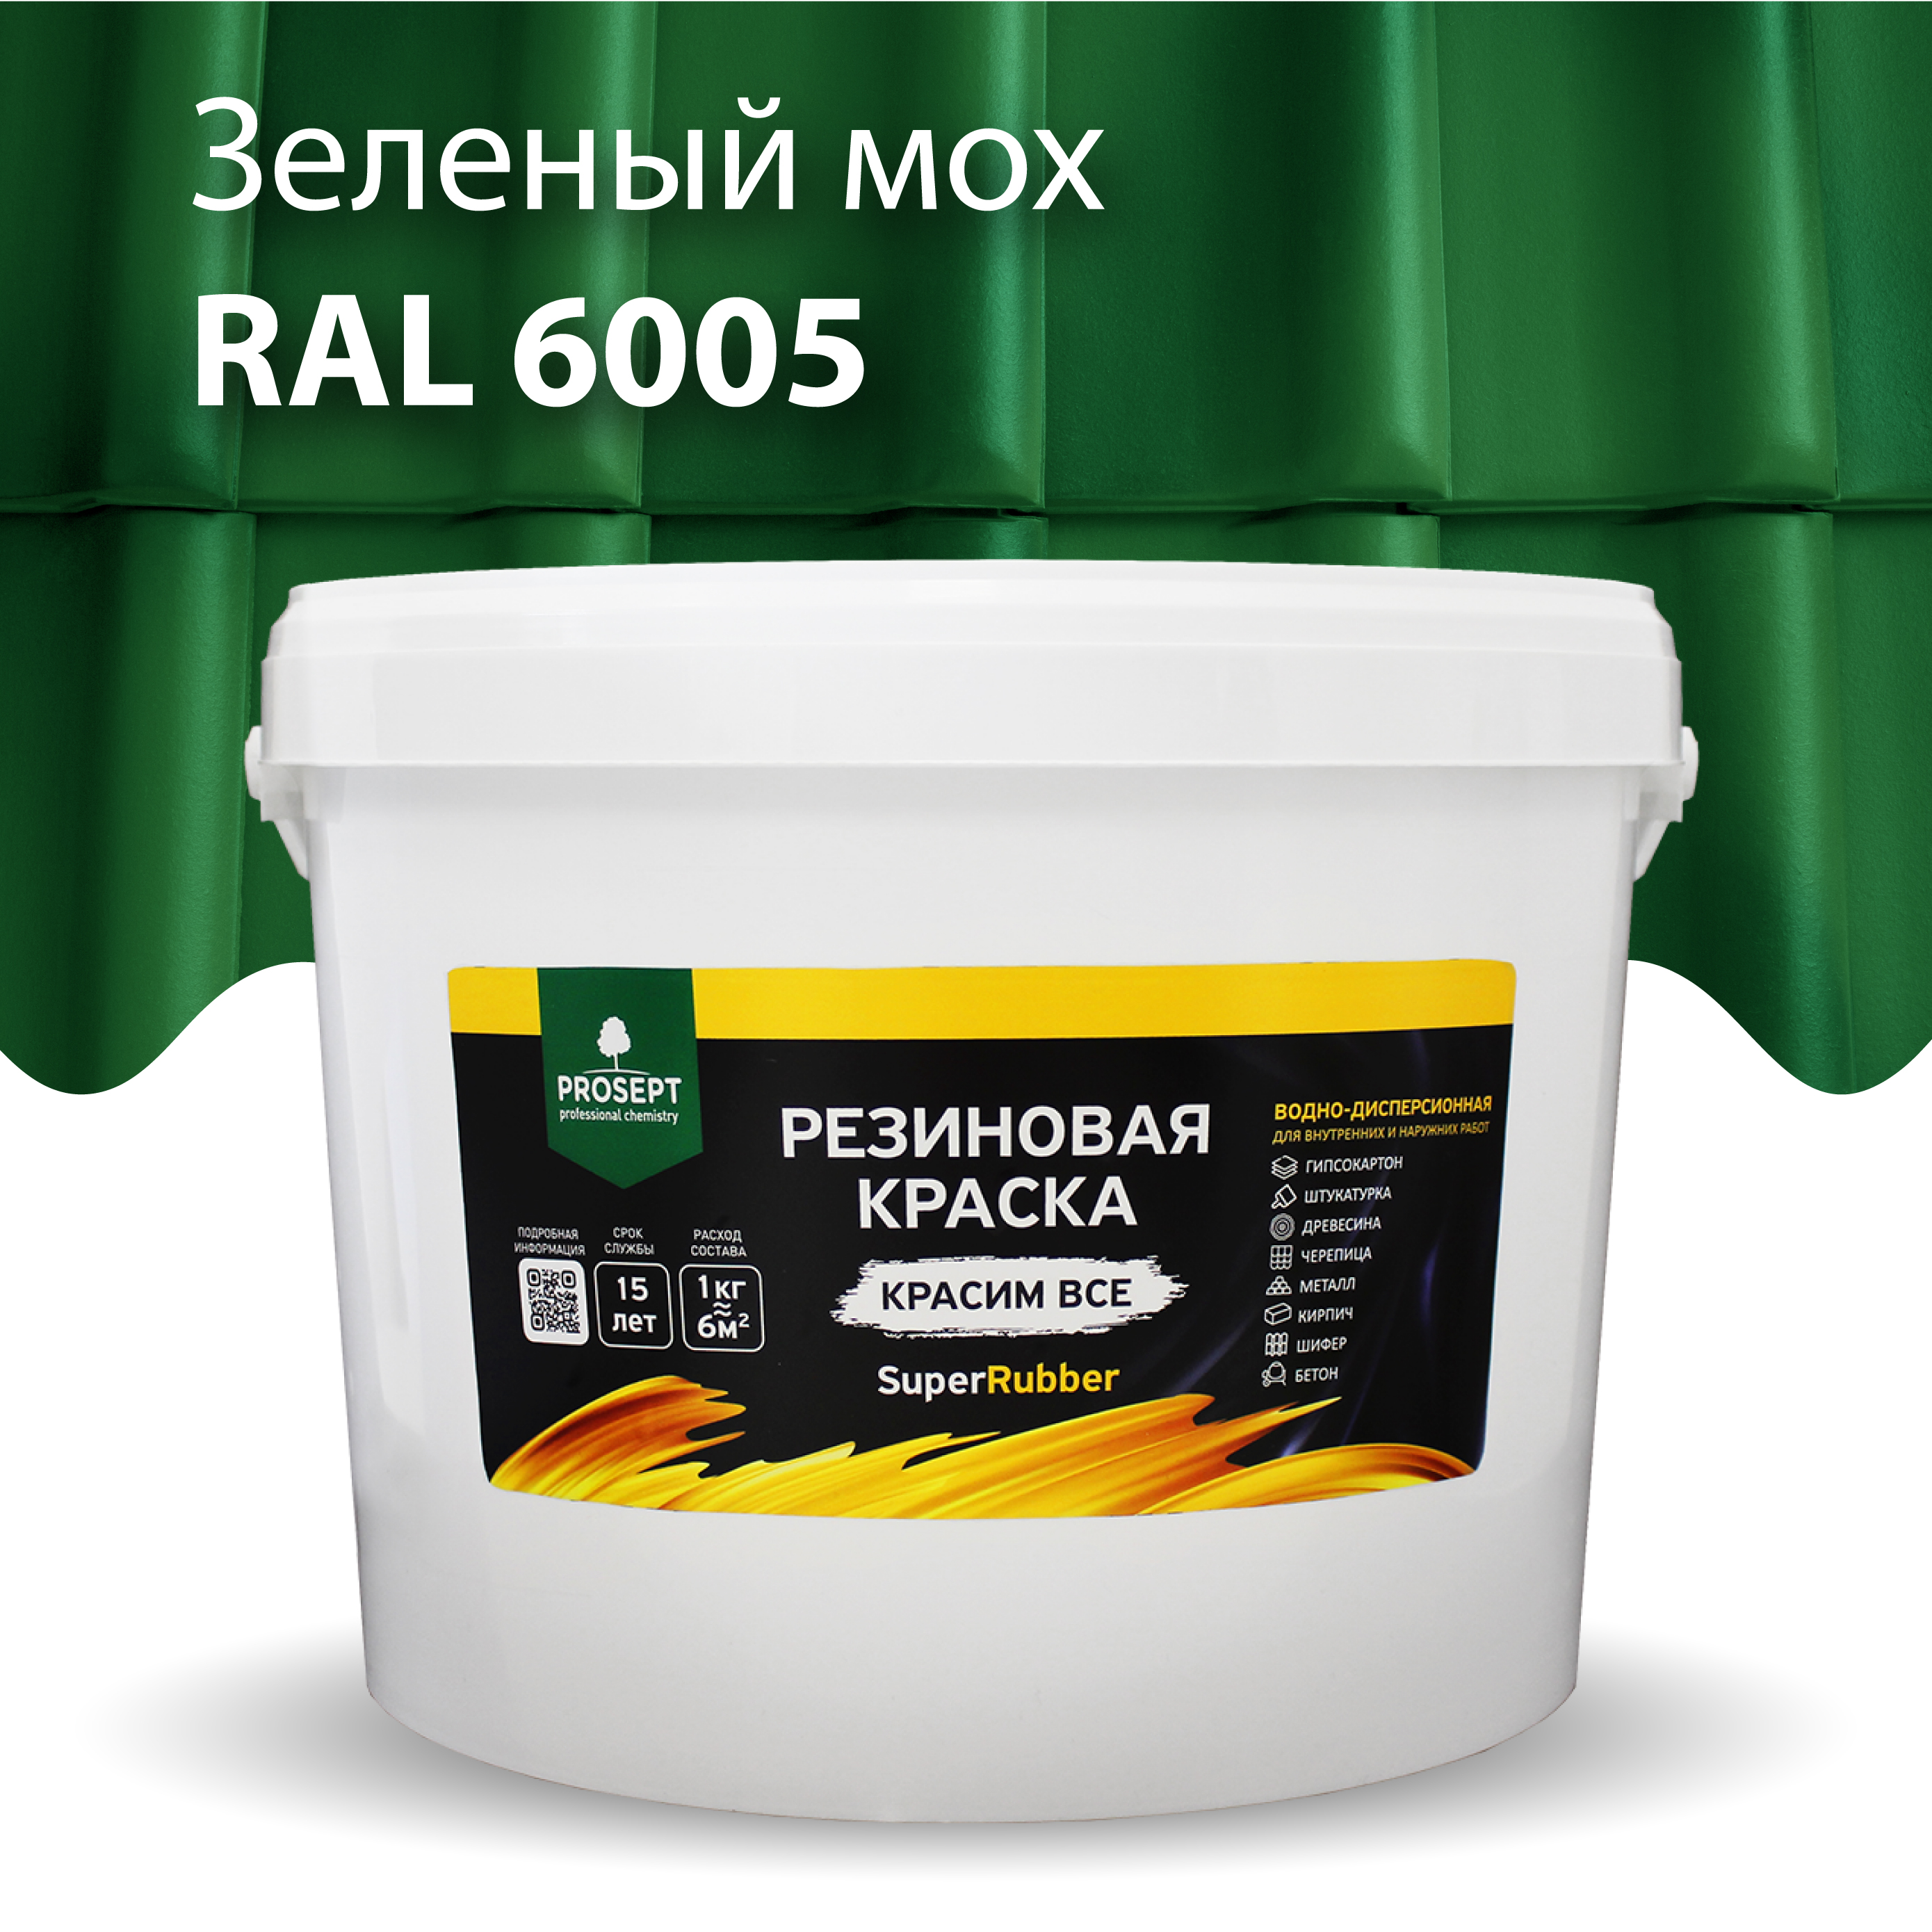 Краска Резиновая краска SuperRubber, RAL 6005 (зеленый мох), 12 кг